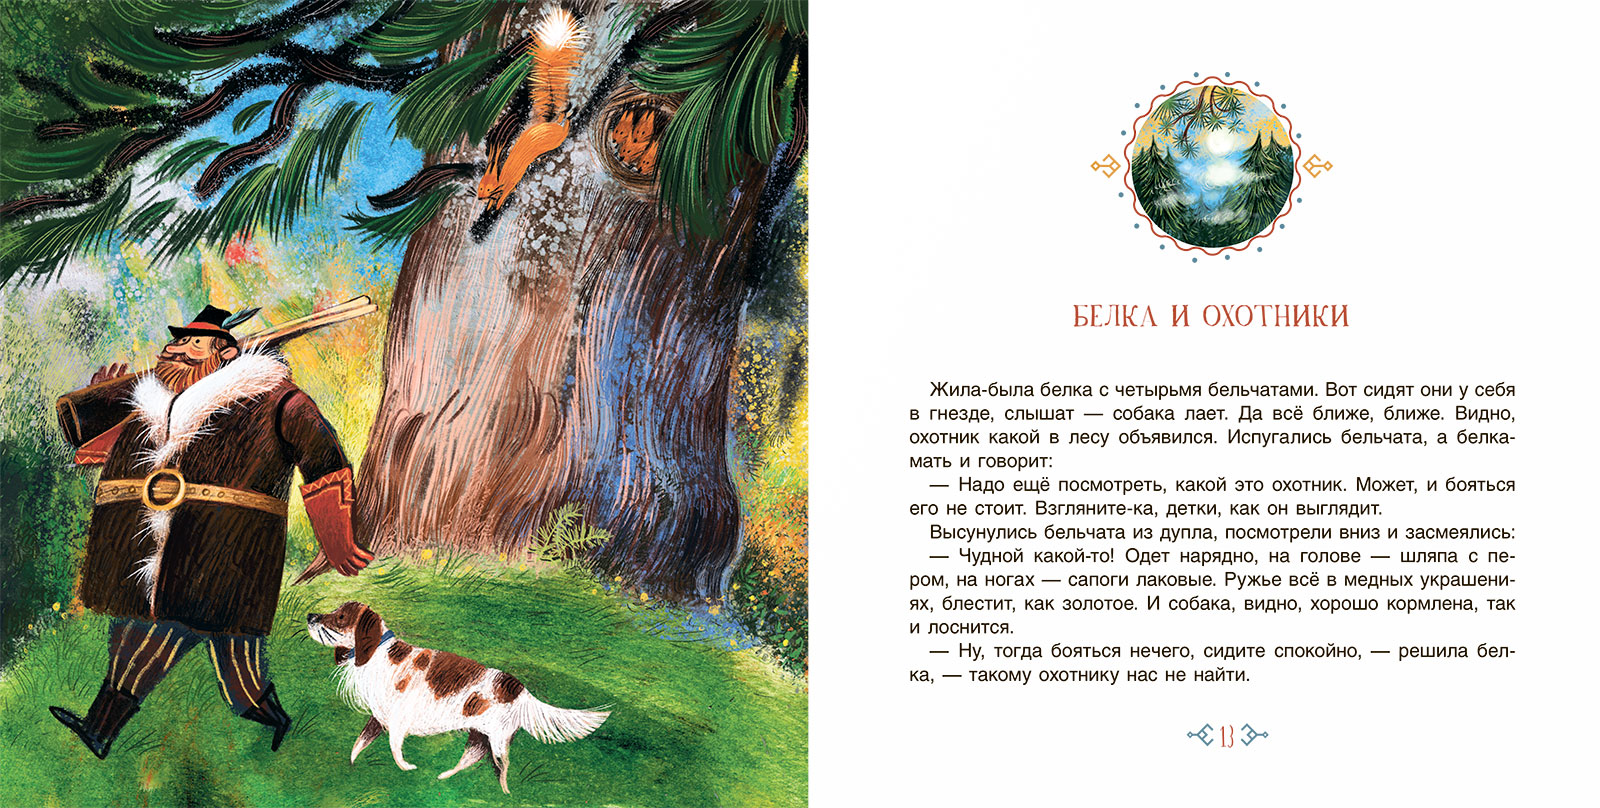 Сборник Белка и охотники. Финские сказки. – изображение 6